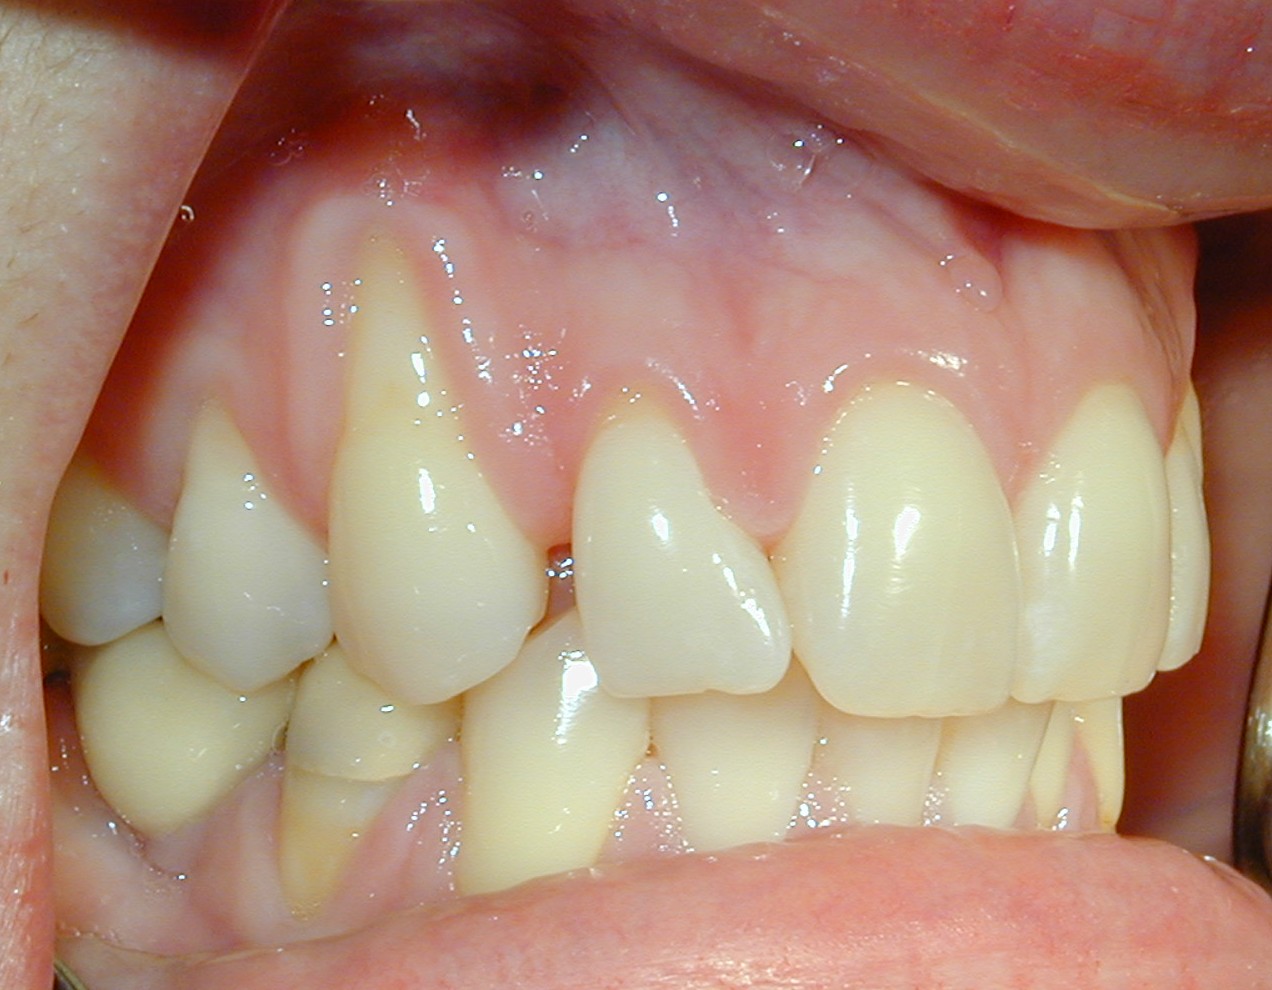 Oral Biopsies – Operative Warnings11